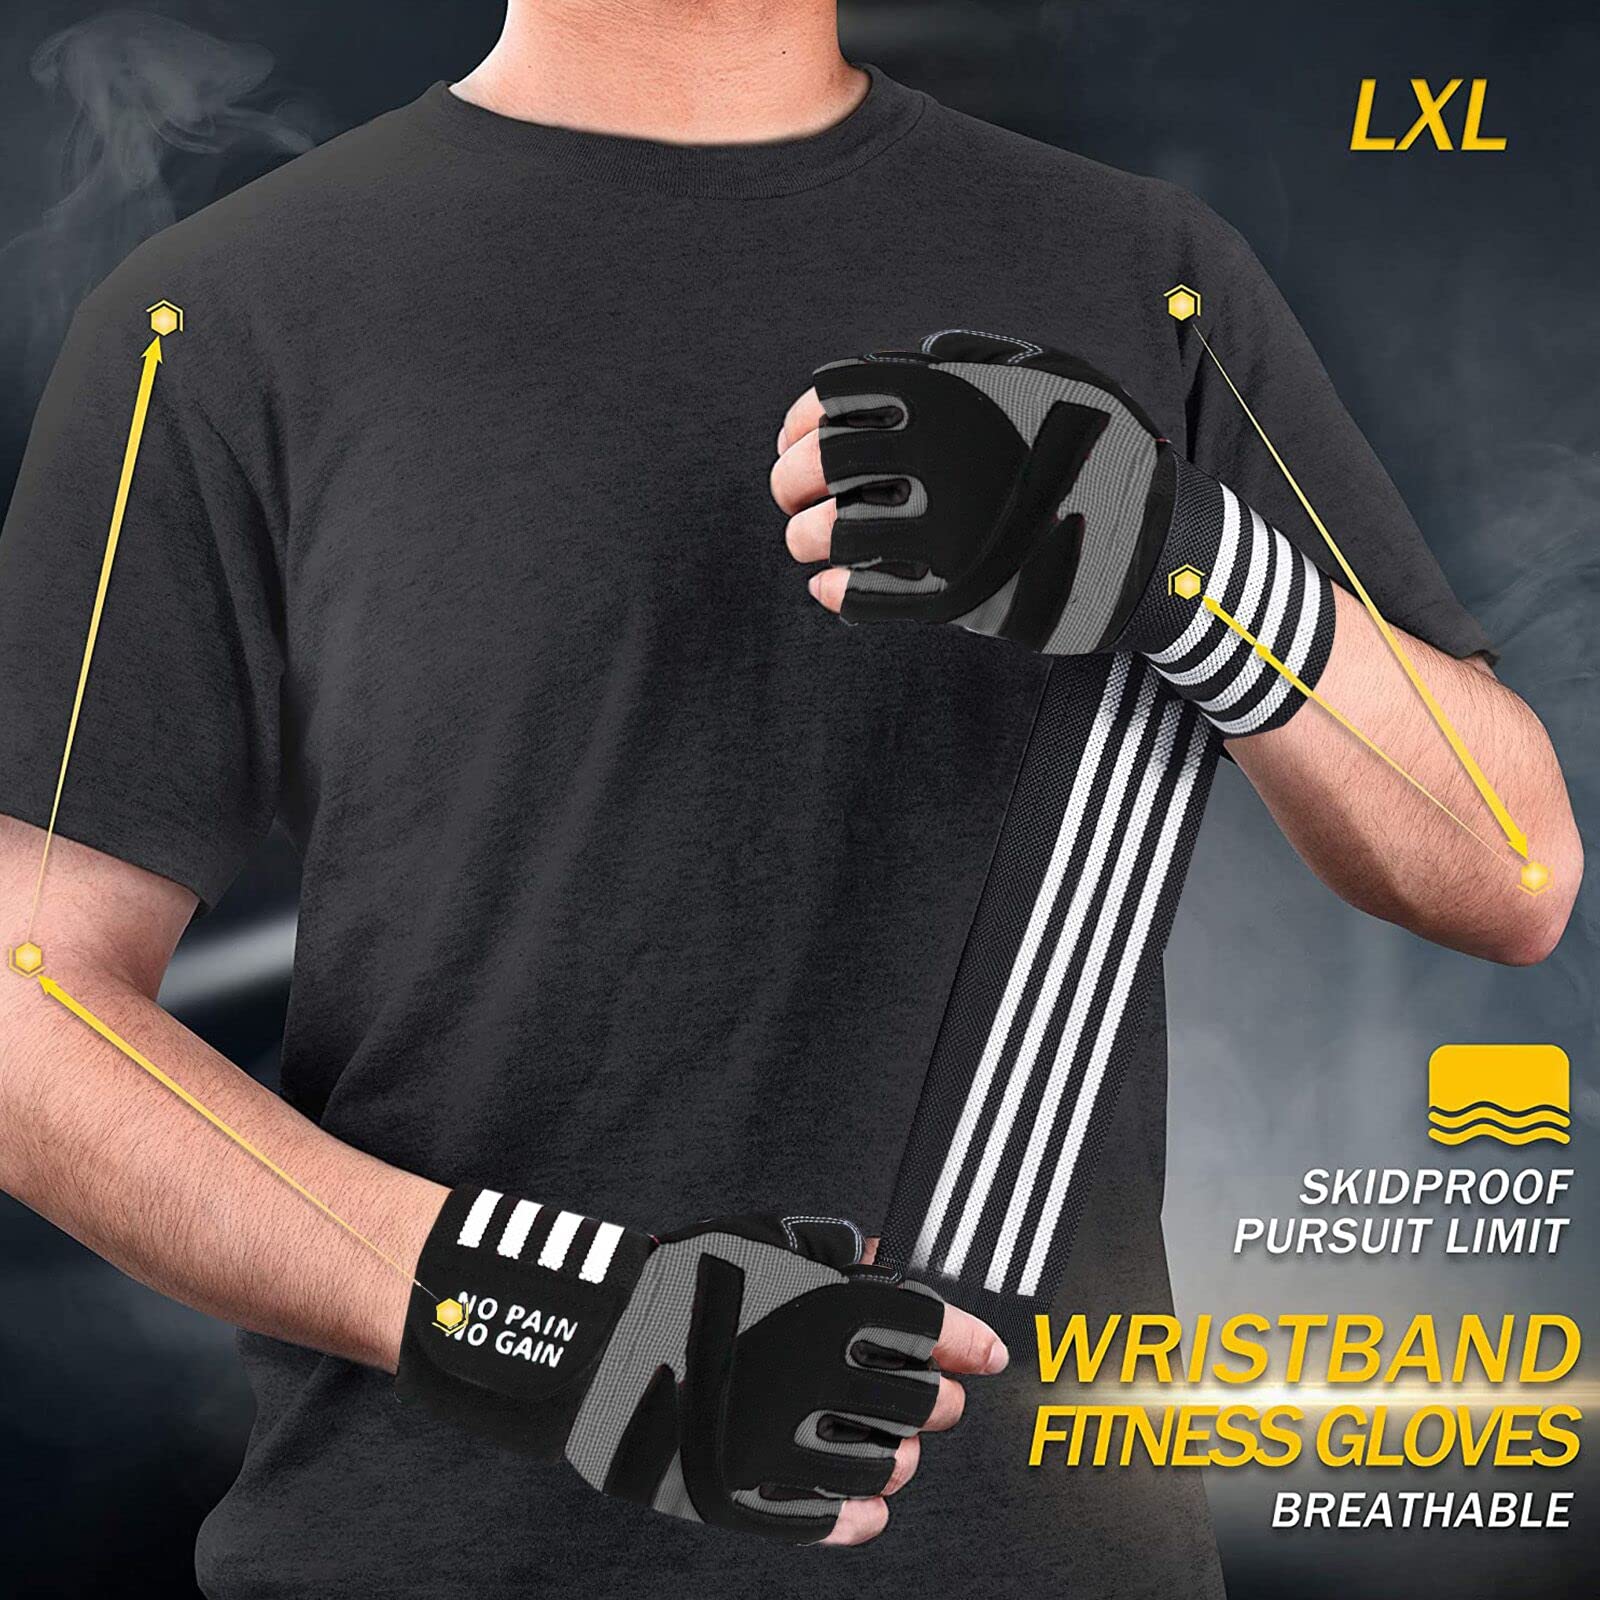 Flexzone Workout Gloves with Wrist Wraps